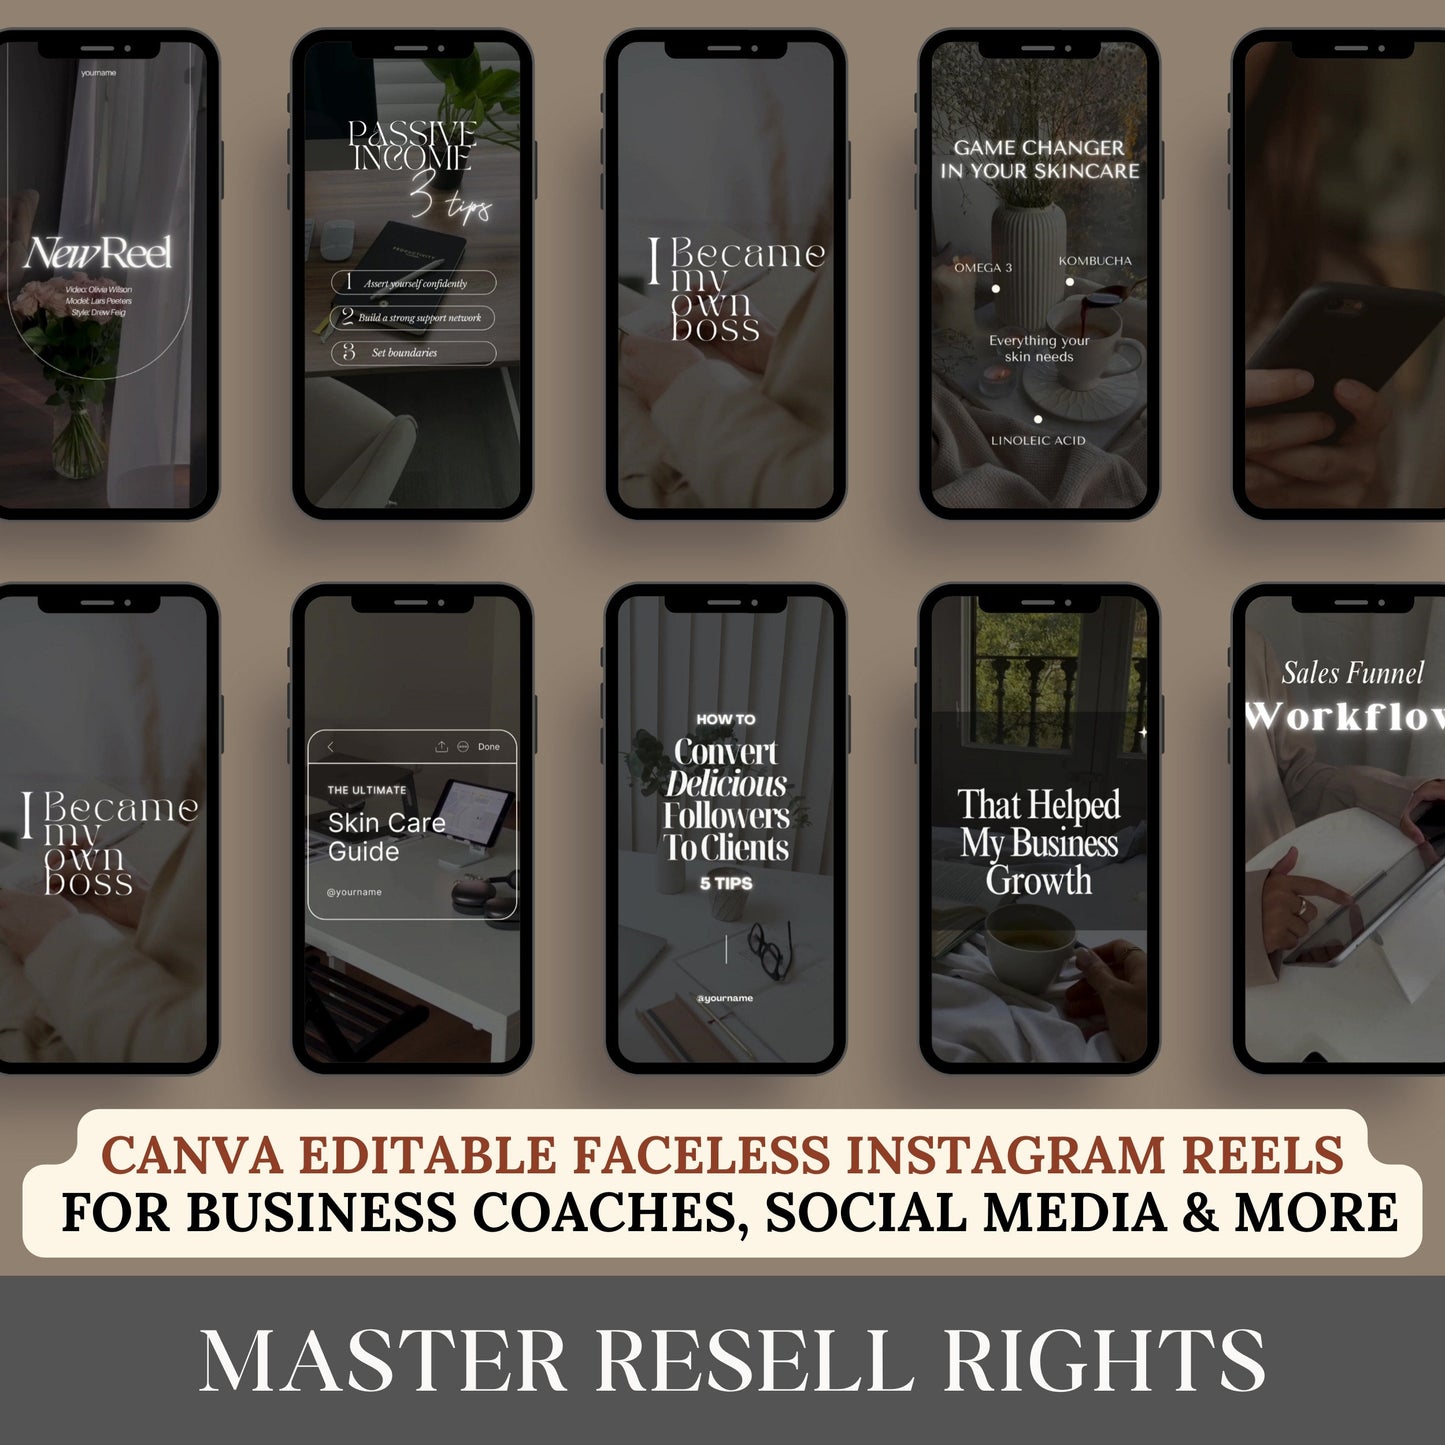 PLR Faceless Reels Master Resell Rights Instagram-Vorlagen, MRR PLR Digital Products für Sie zum Verkauf auf Etsy Faceless Marketing-Videos